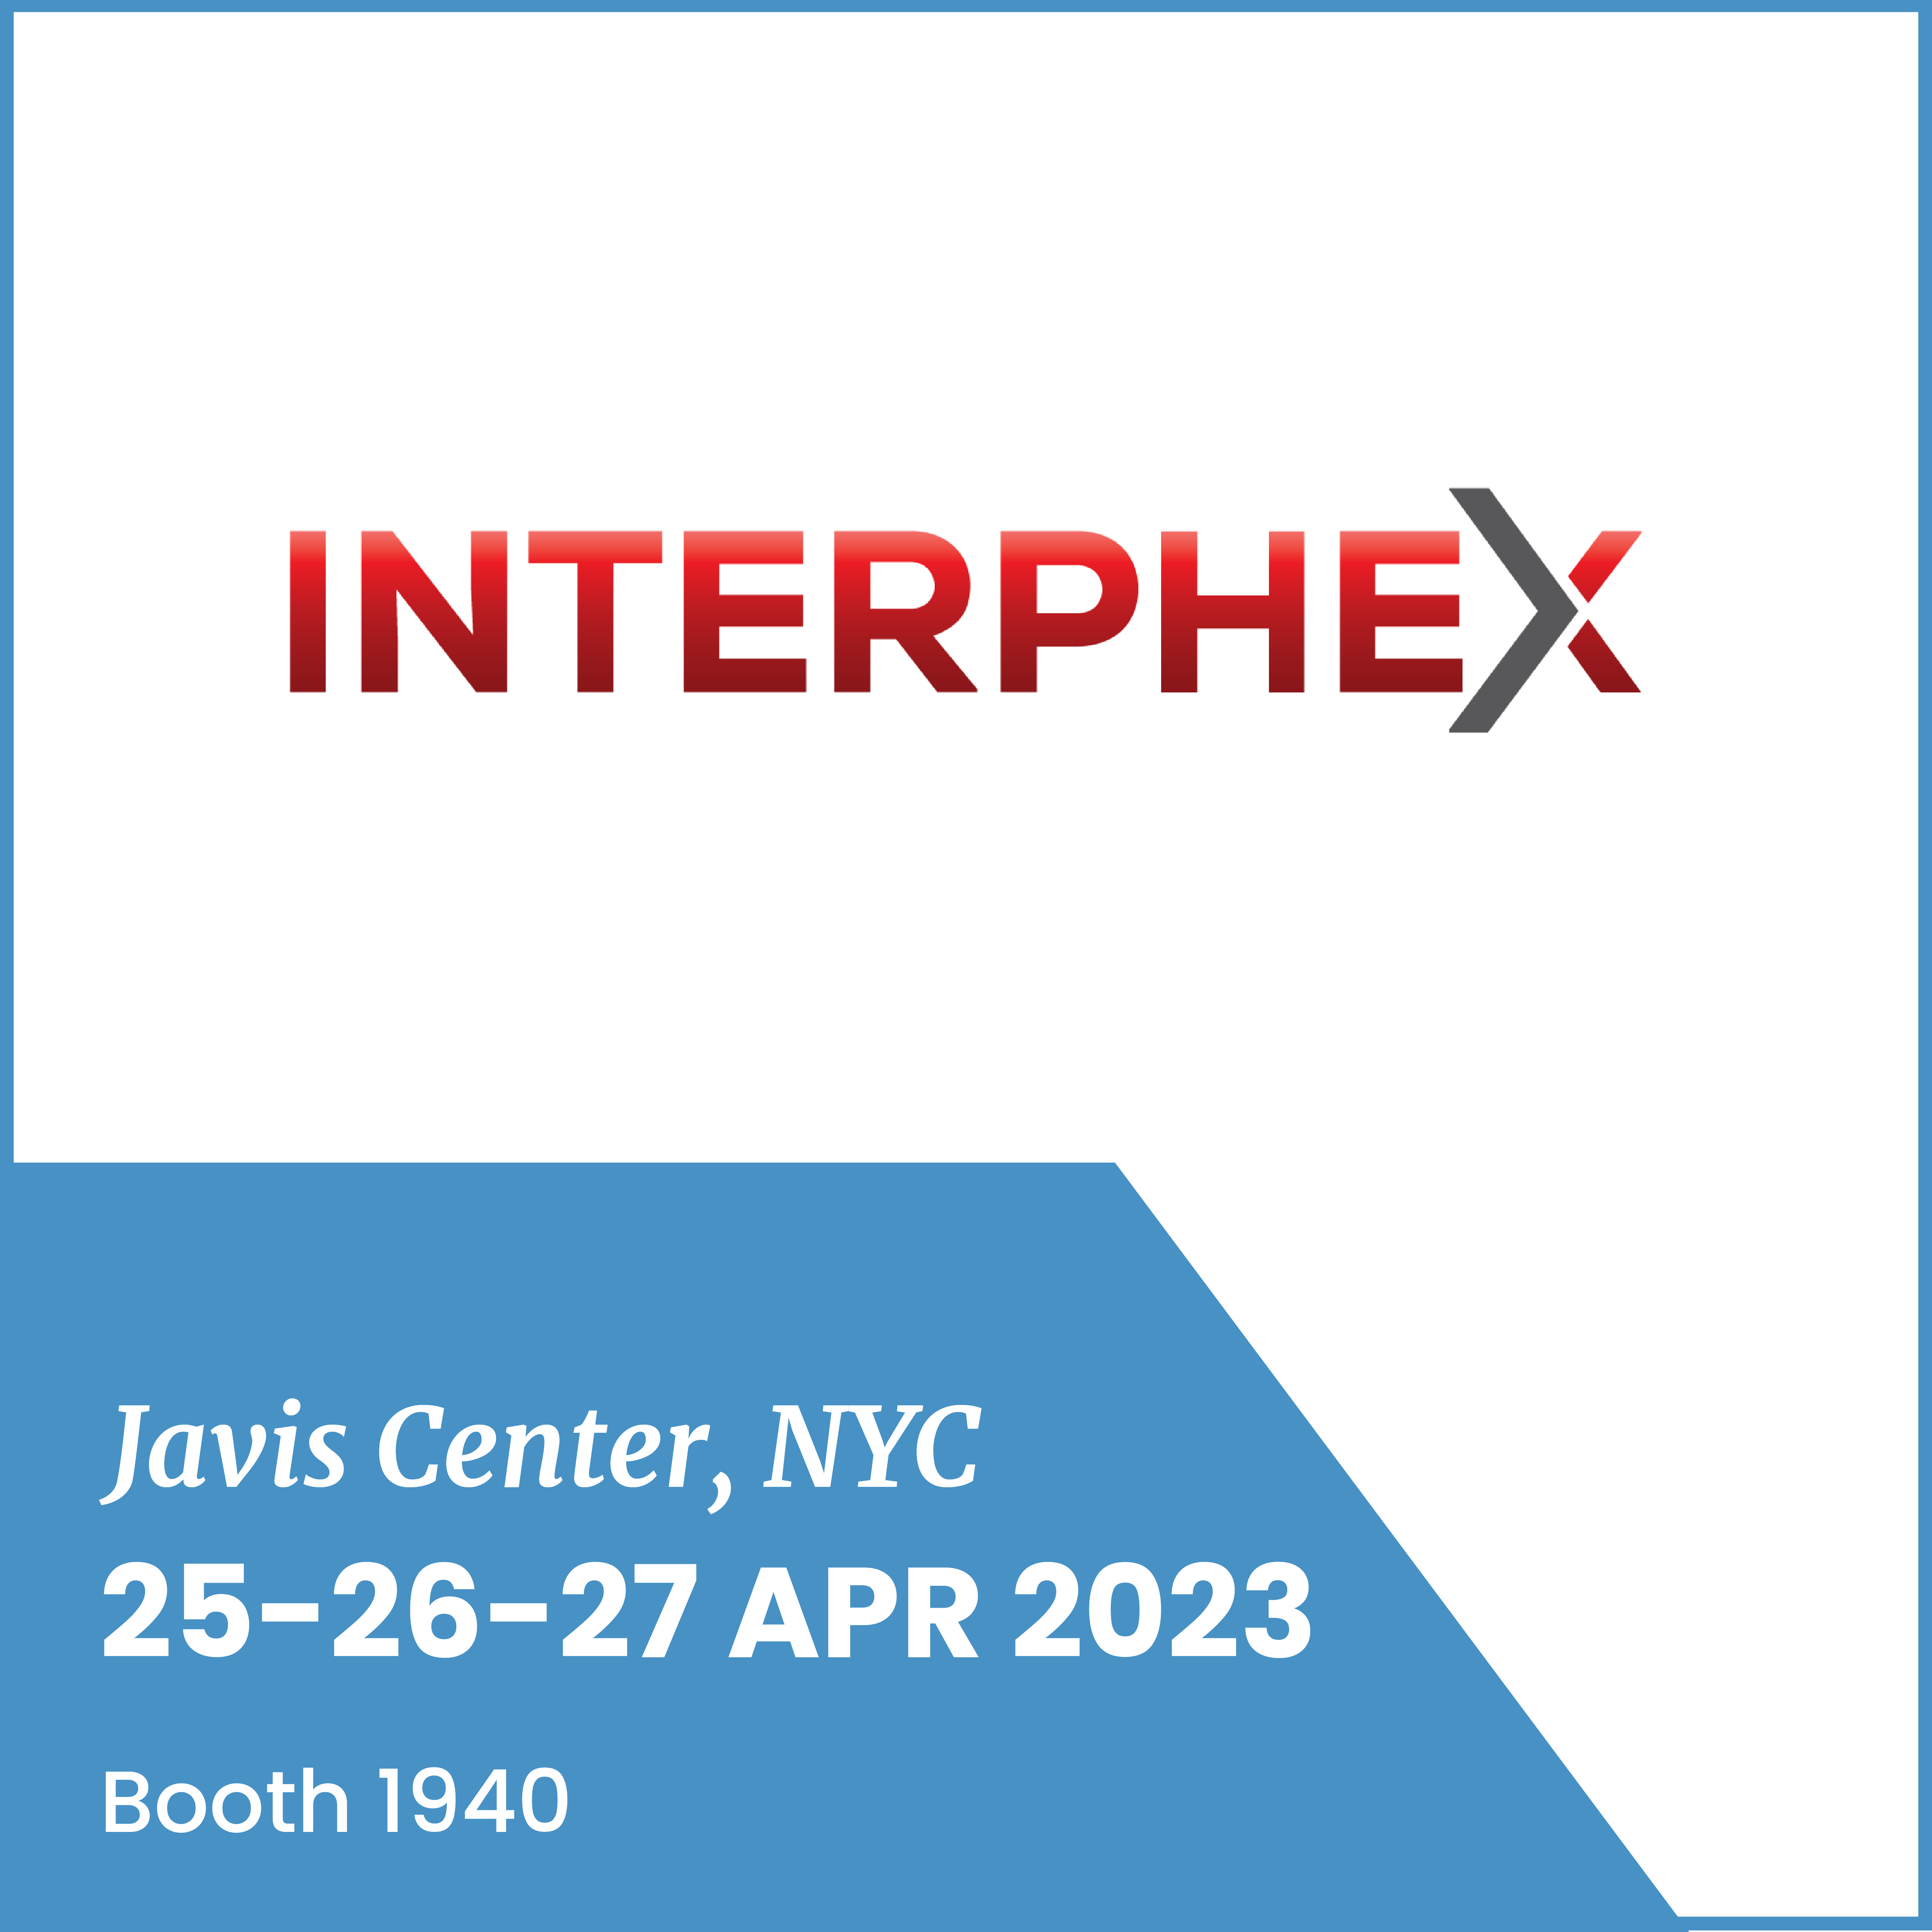 Interphex 2023, 25-27 APR, NYC